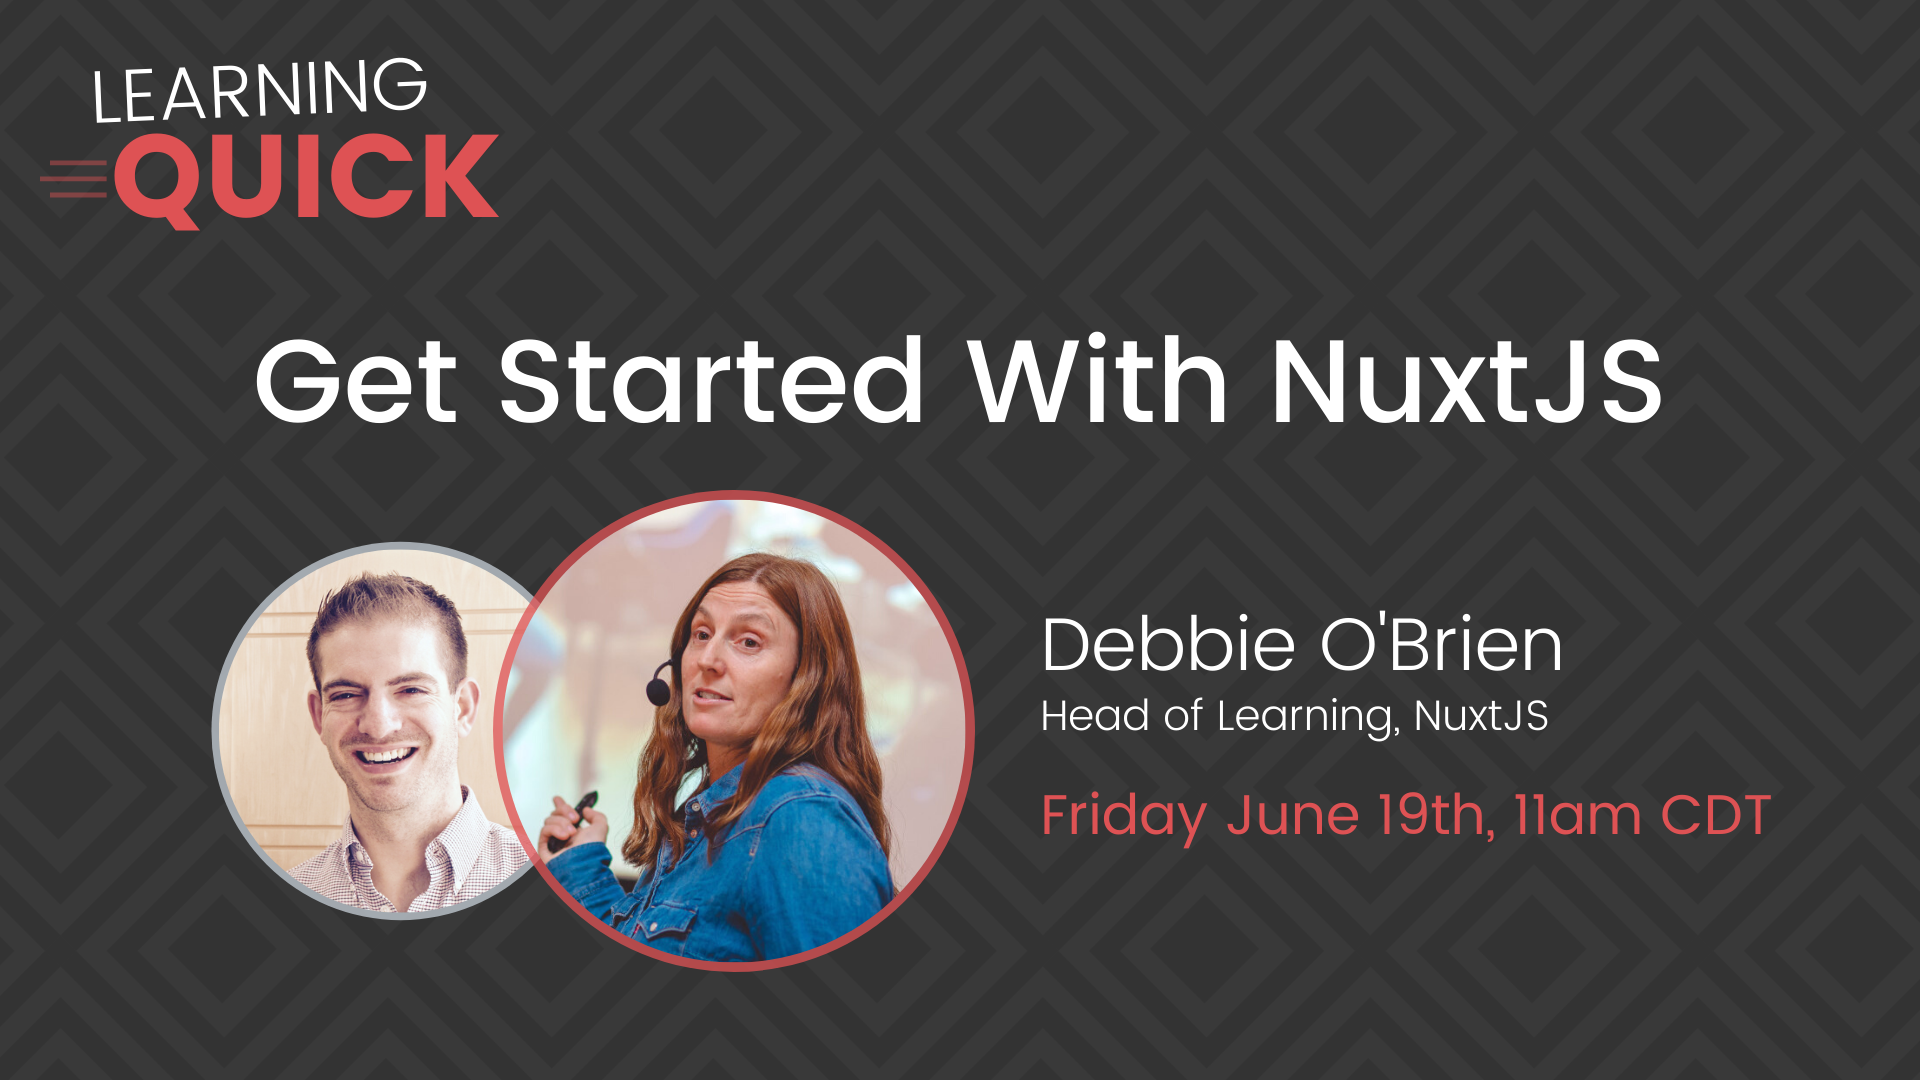 NuxtJS with Debbie O'Brien